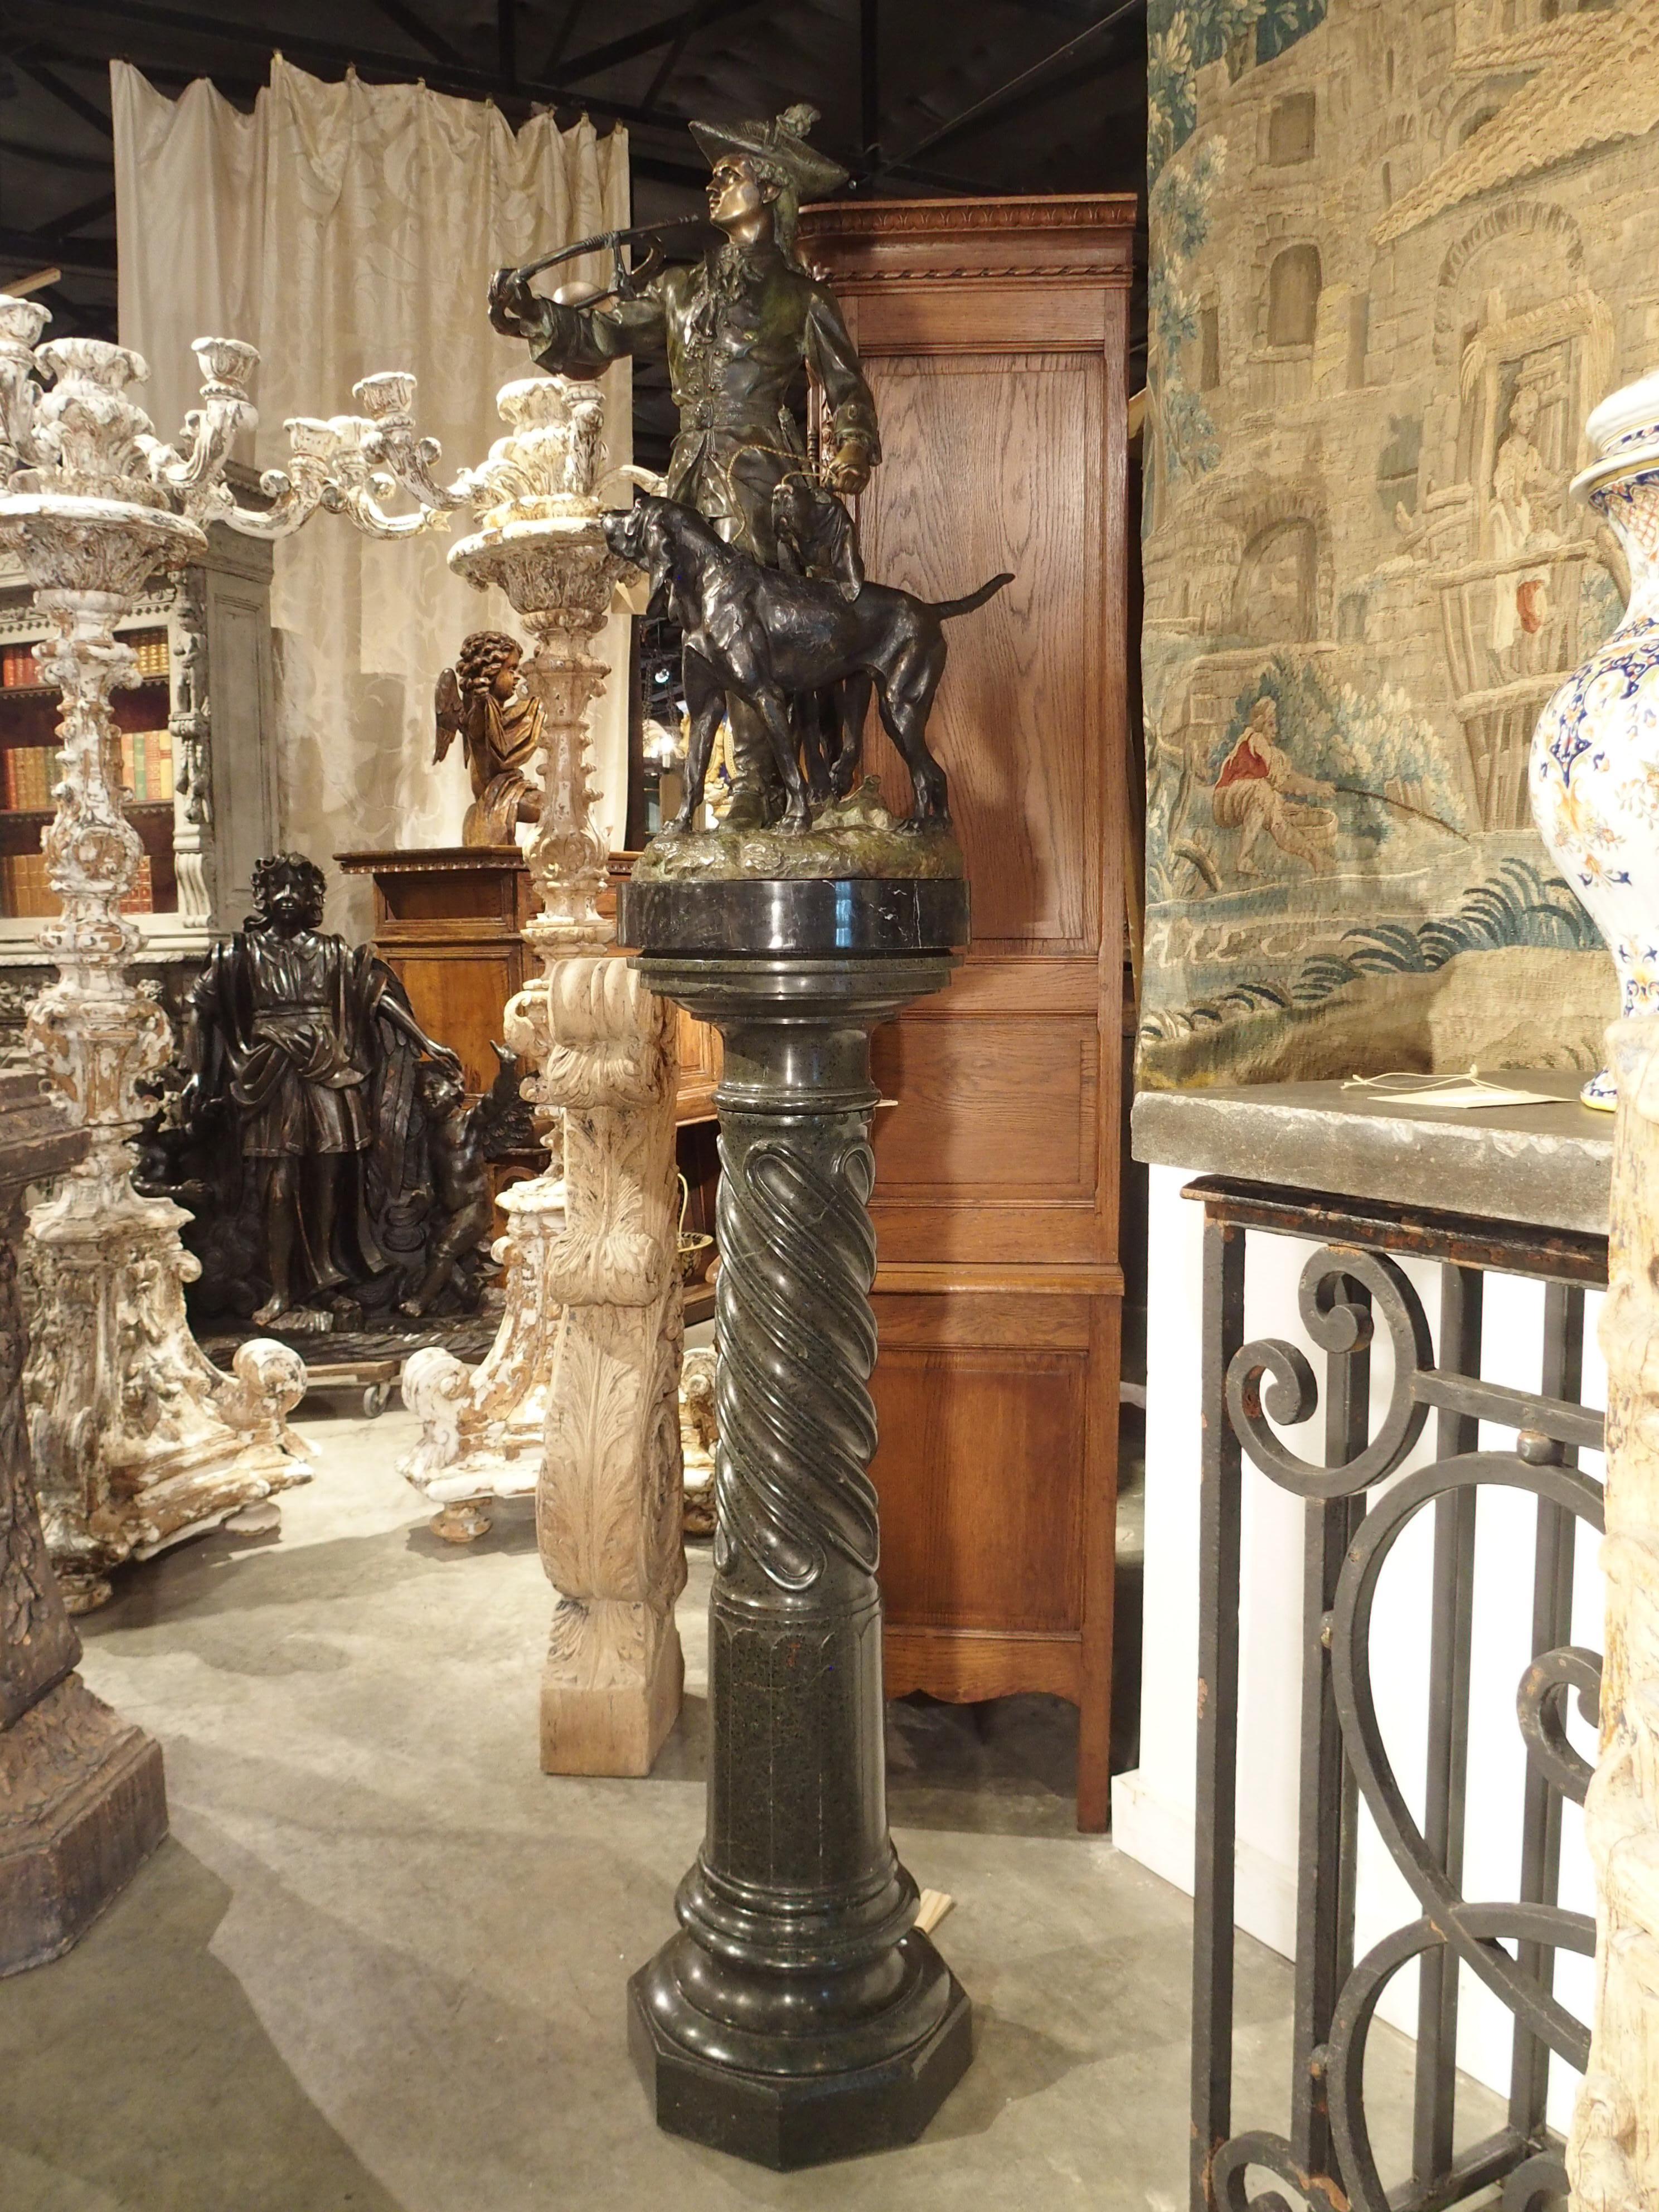 Cette statue en bronze patiné représentant un chasseur avec des chiens courants repose sur un haut piédestal en marbre. La statue très détaillée est un mélange de bronze naturel, de vert panaché et de patine noire. Un chasseur est un membre de